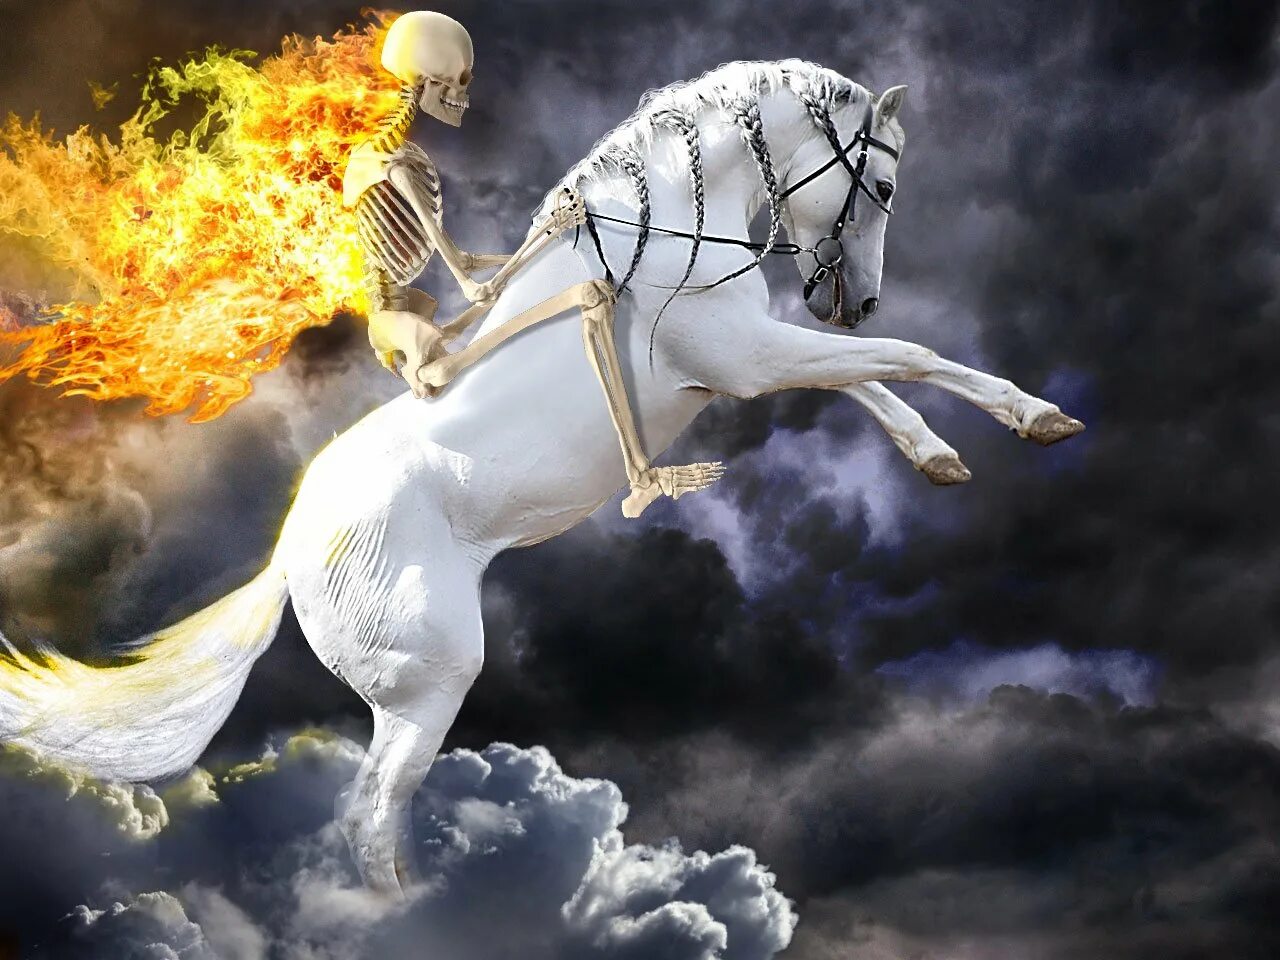 Бледный конь апокалипсиса. Бледный конь всадник апокалипсиса. Всадник на бледном коне апокалипсис. Бледный конь бледный всадник. Белая лошадь теракт